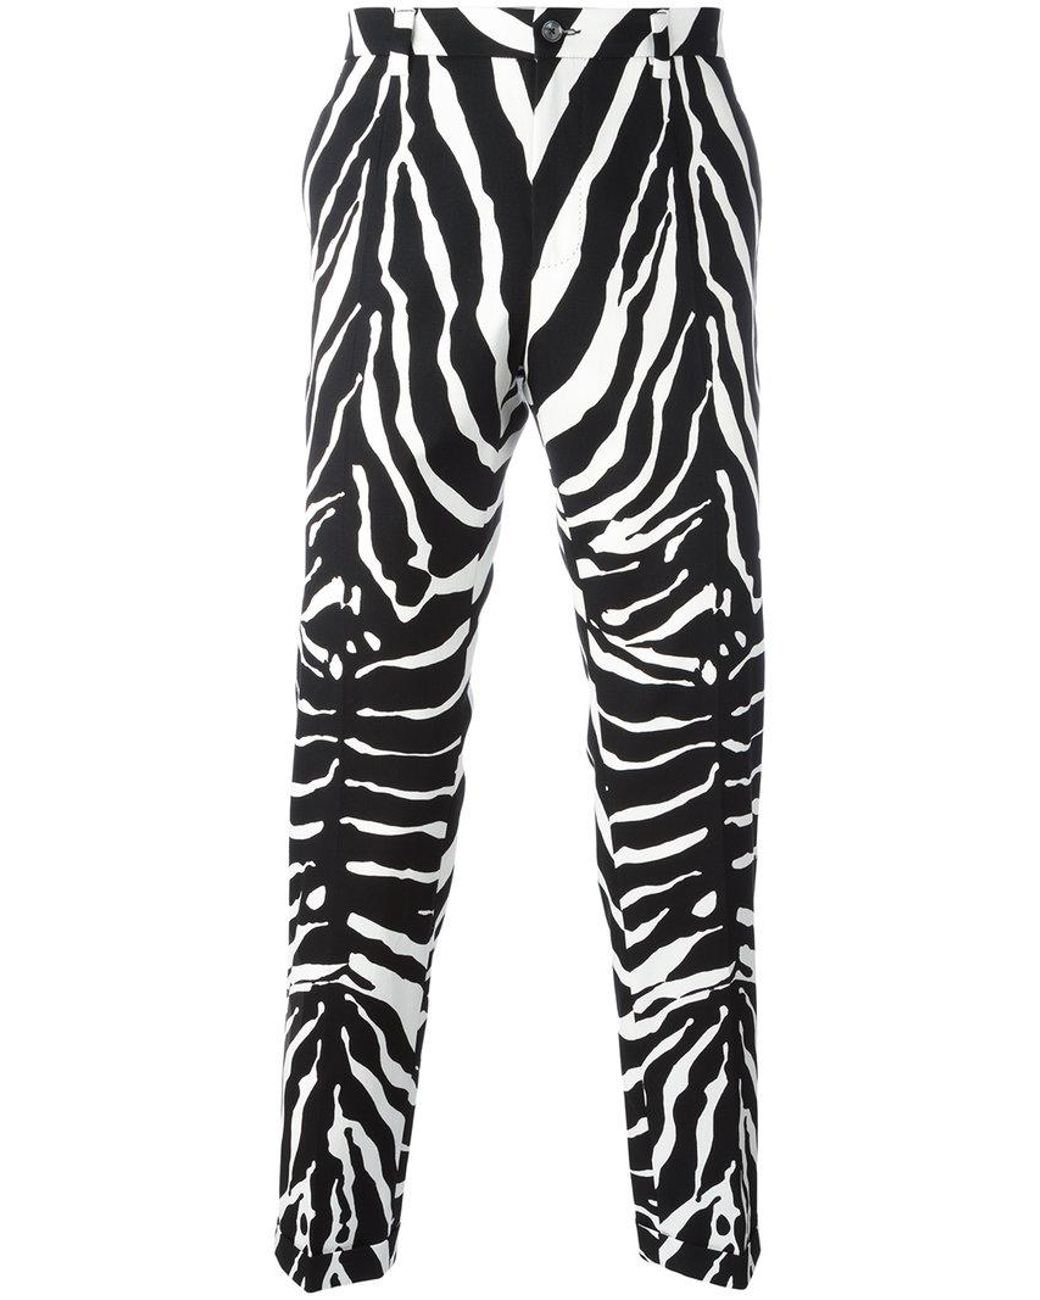 Dolce & Gabbana Zebra Print Trousers in Black for Men